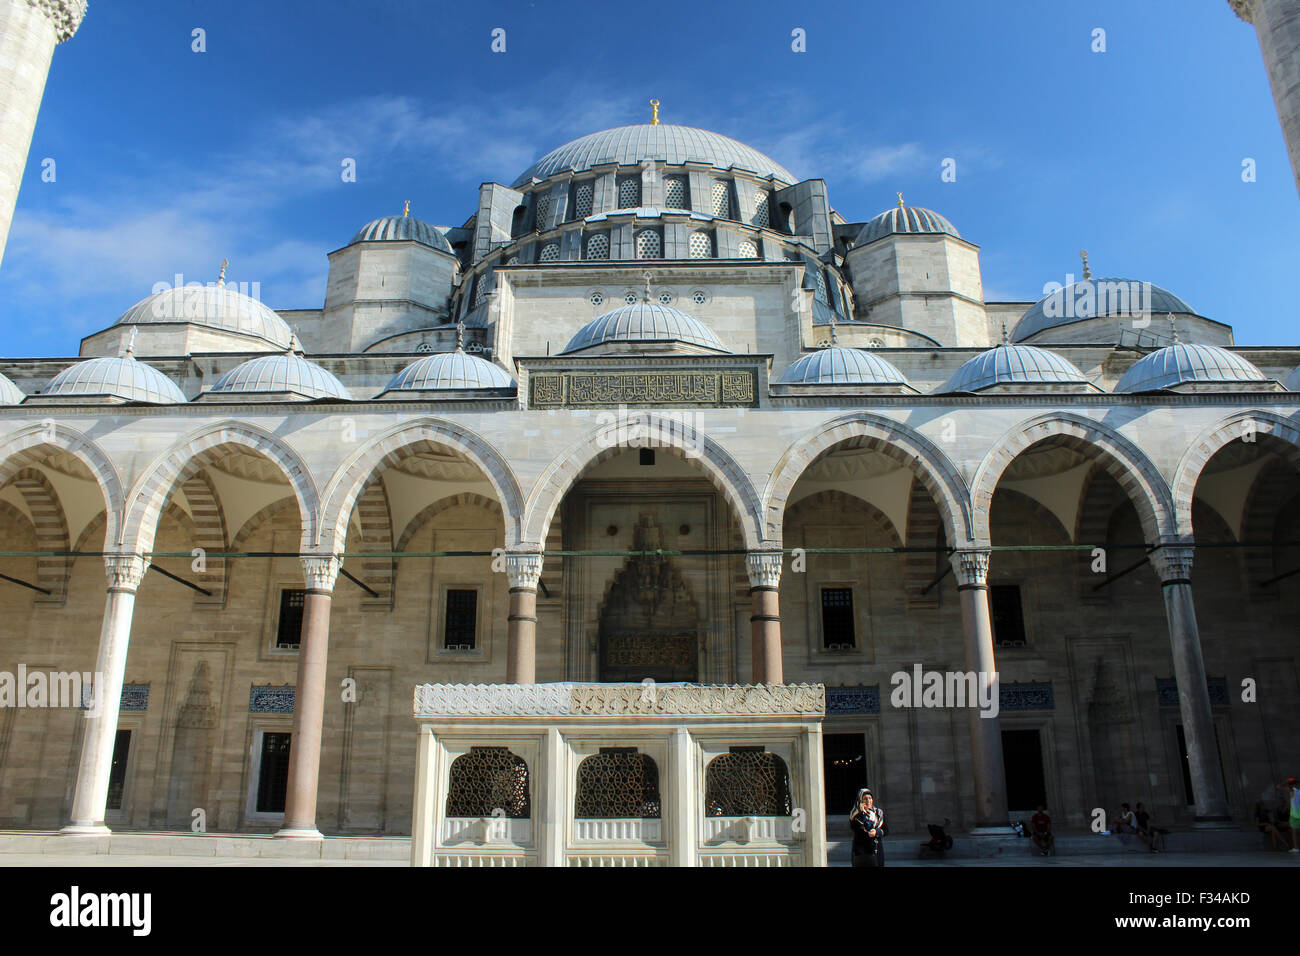 Une mosquée typique d'Istanbul comme une architecture historique et monument religieux. Banque D'Images